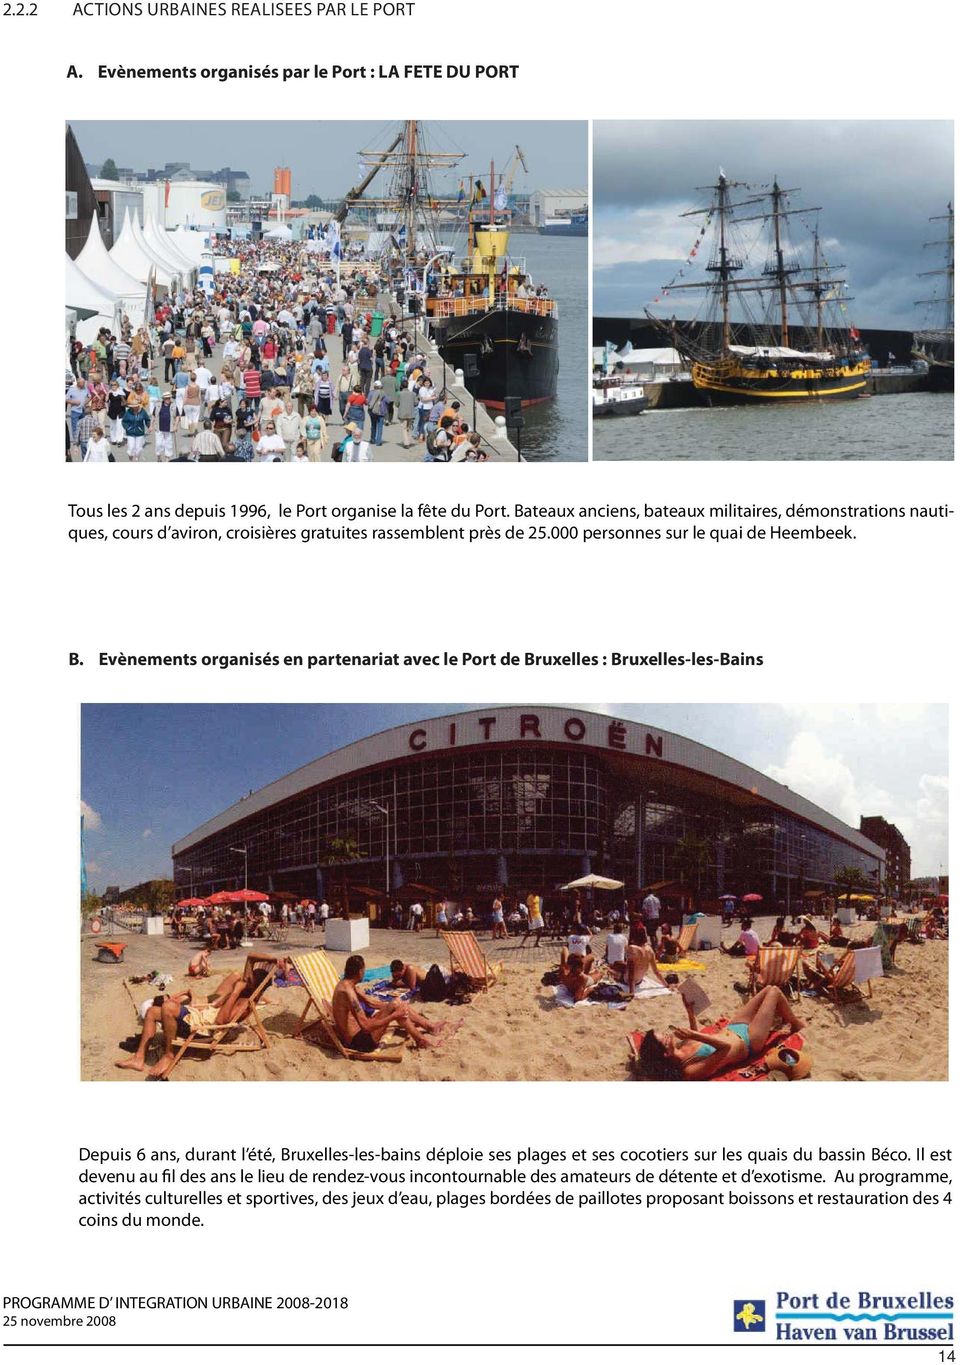 Evènements organisés en partenariat avec le Port de Bruxelles : Bruxelles-les-Bains Depuis 6 ans, durant l été, Bruxelles-les-bains déploie ses plages et ses cocotiers sur les quais du bassin